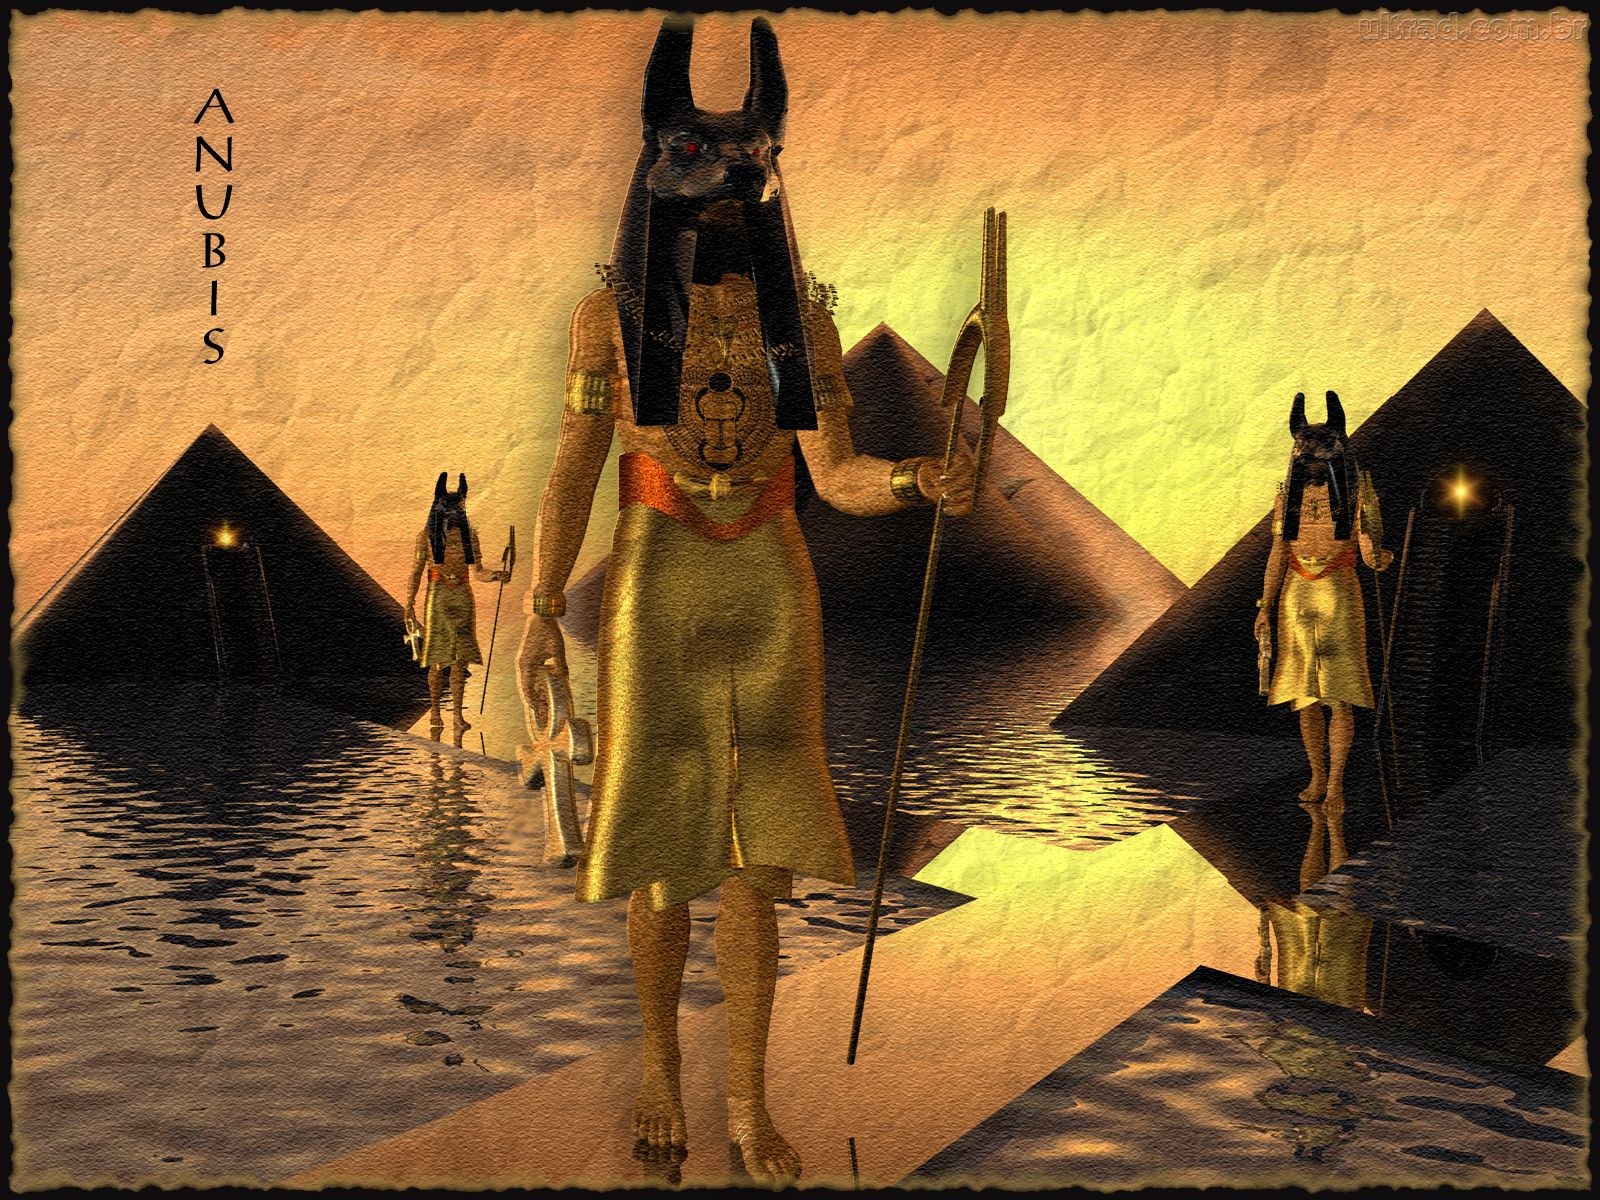  anubis e horus fotds deuses da morte wallpaper anubis fotos de anubis